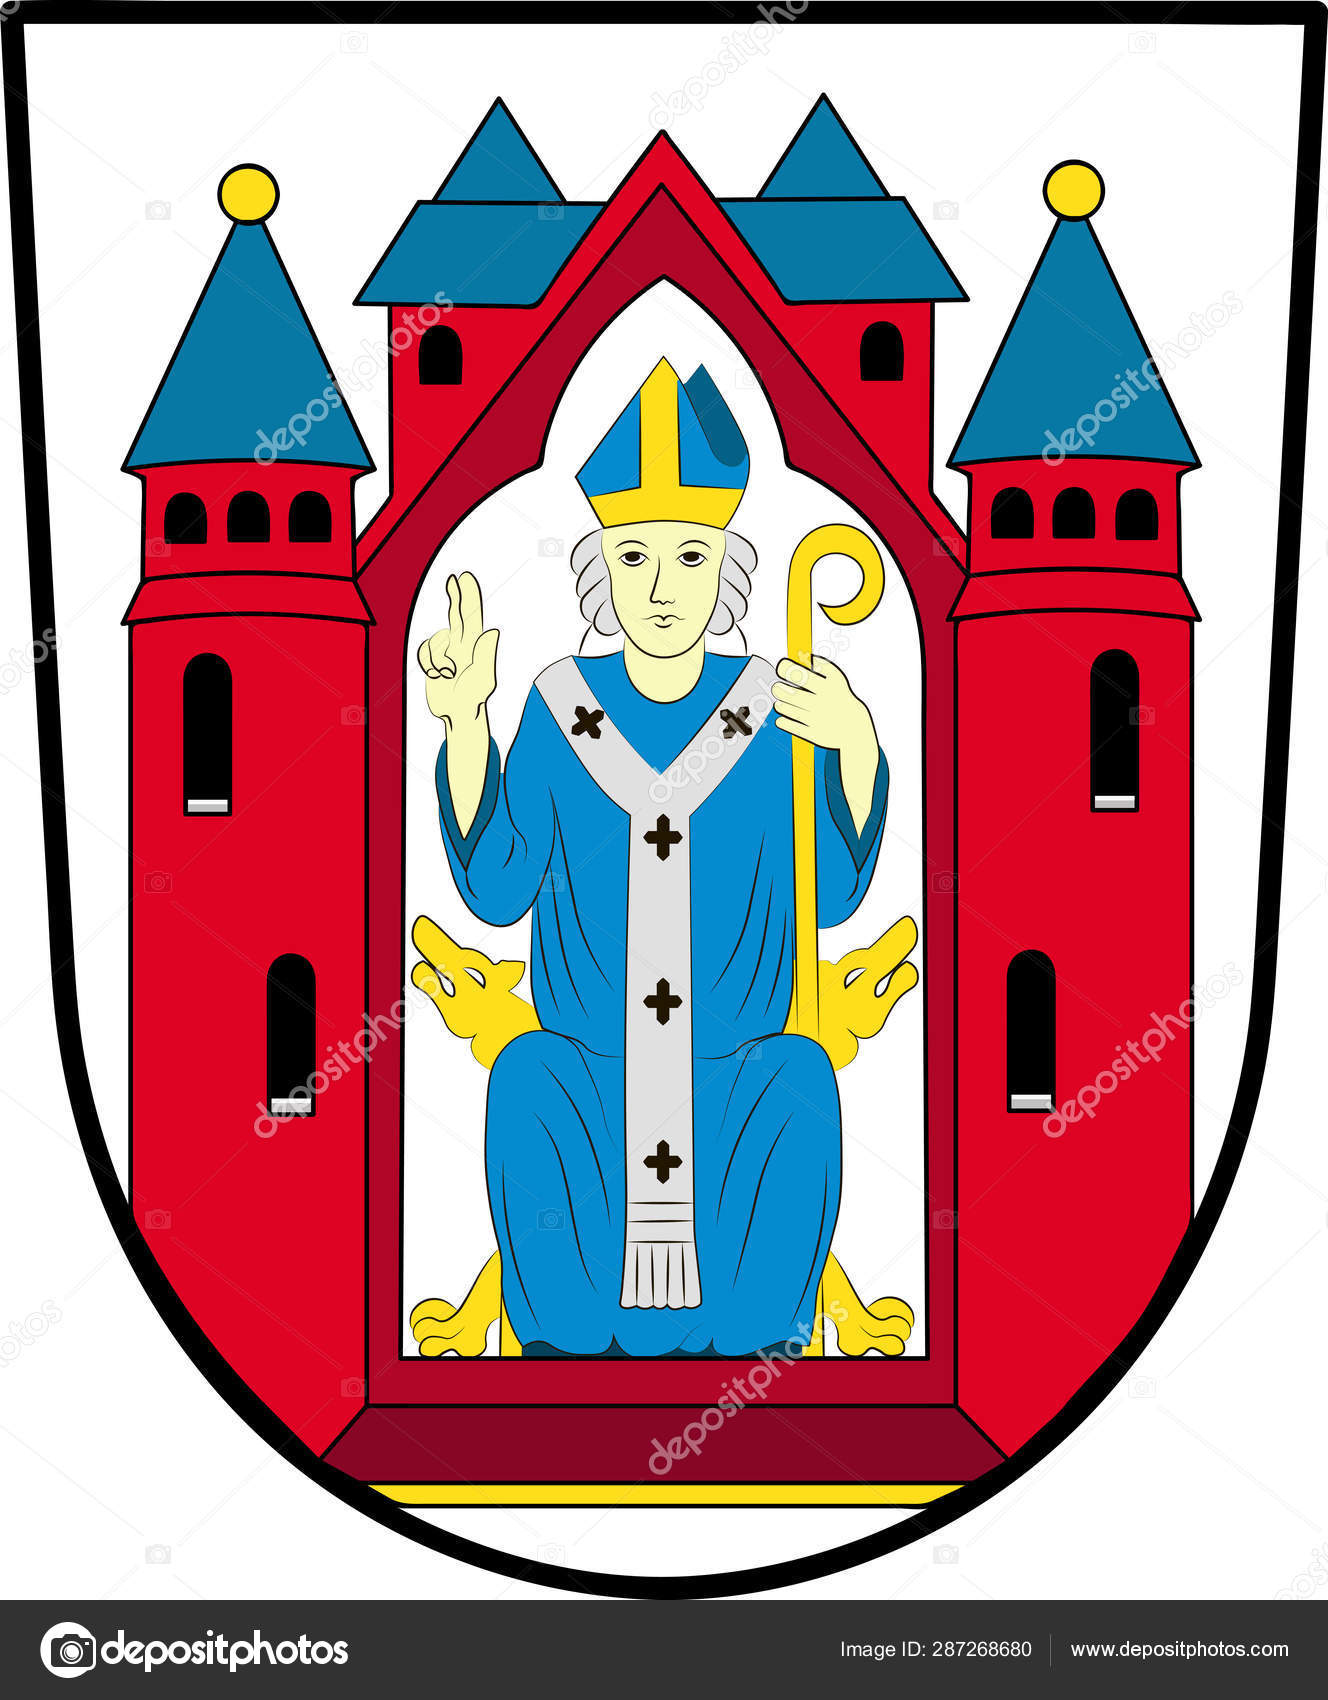 Wappen Von Aschaffenburg In Unterfranken In Bayern Vektorgrafik Lizenzfreie Grafiken C Dique Bk Ru Depositphotos